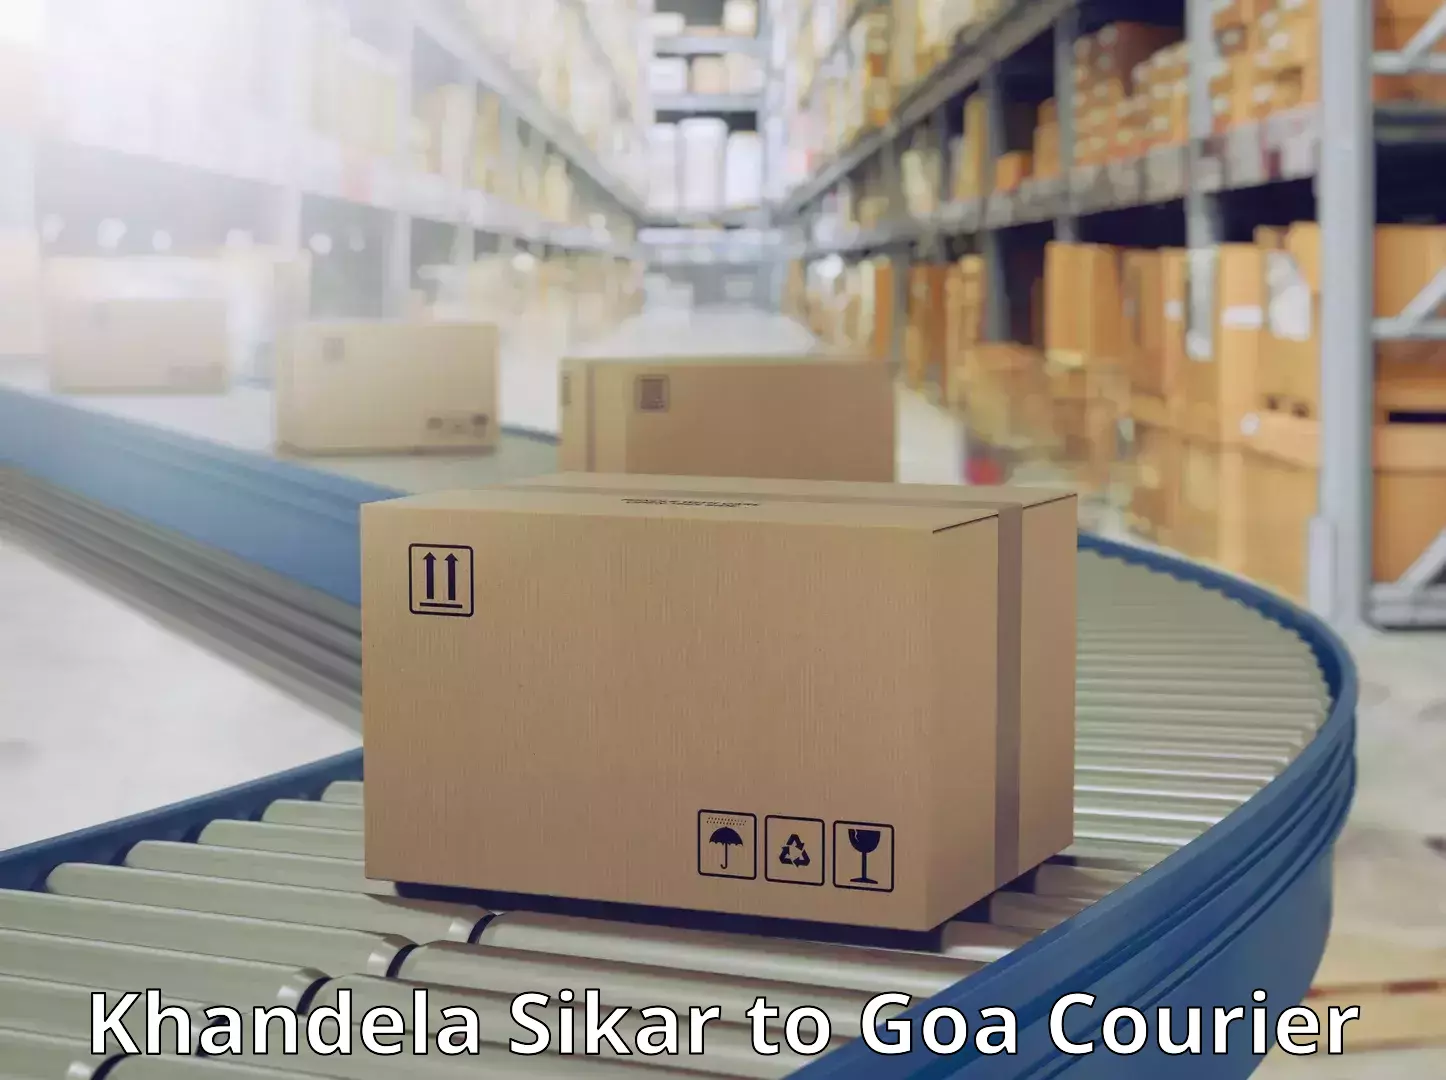 Full-service courier options Khandela Sikar to Goa